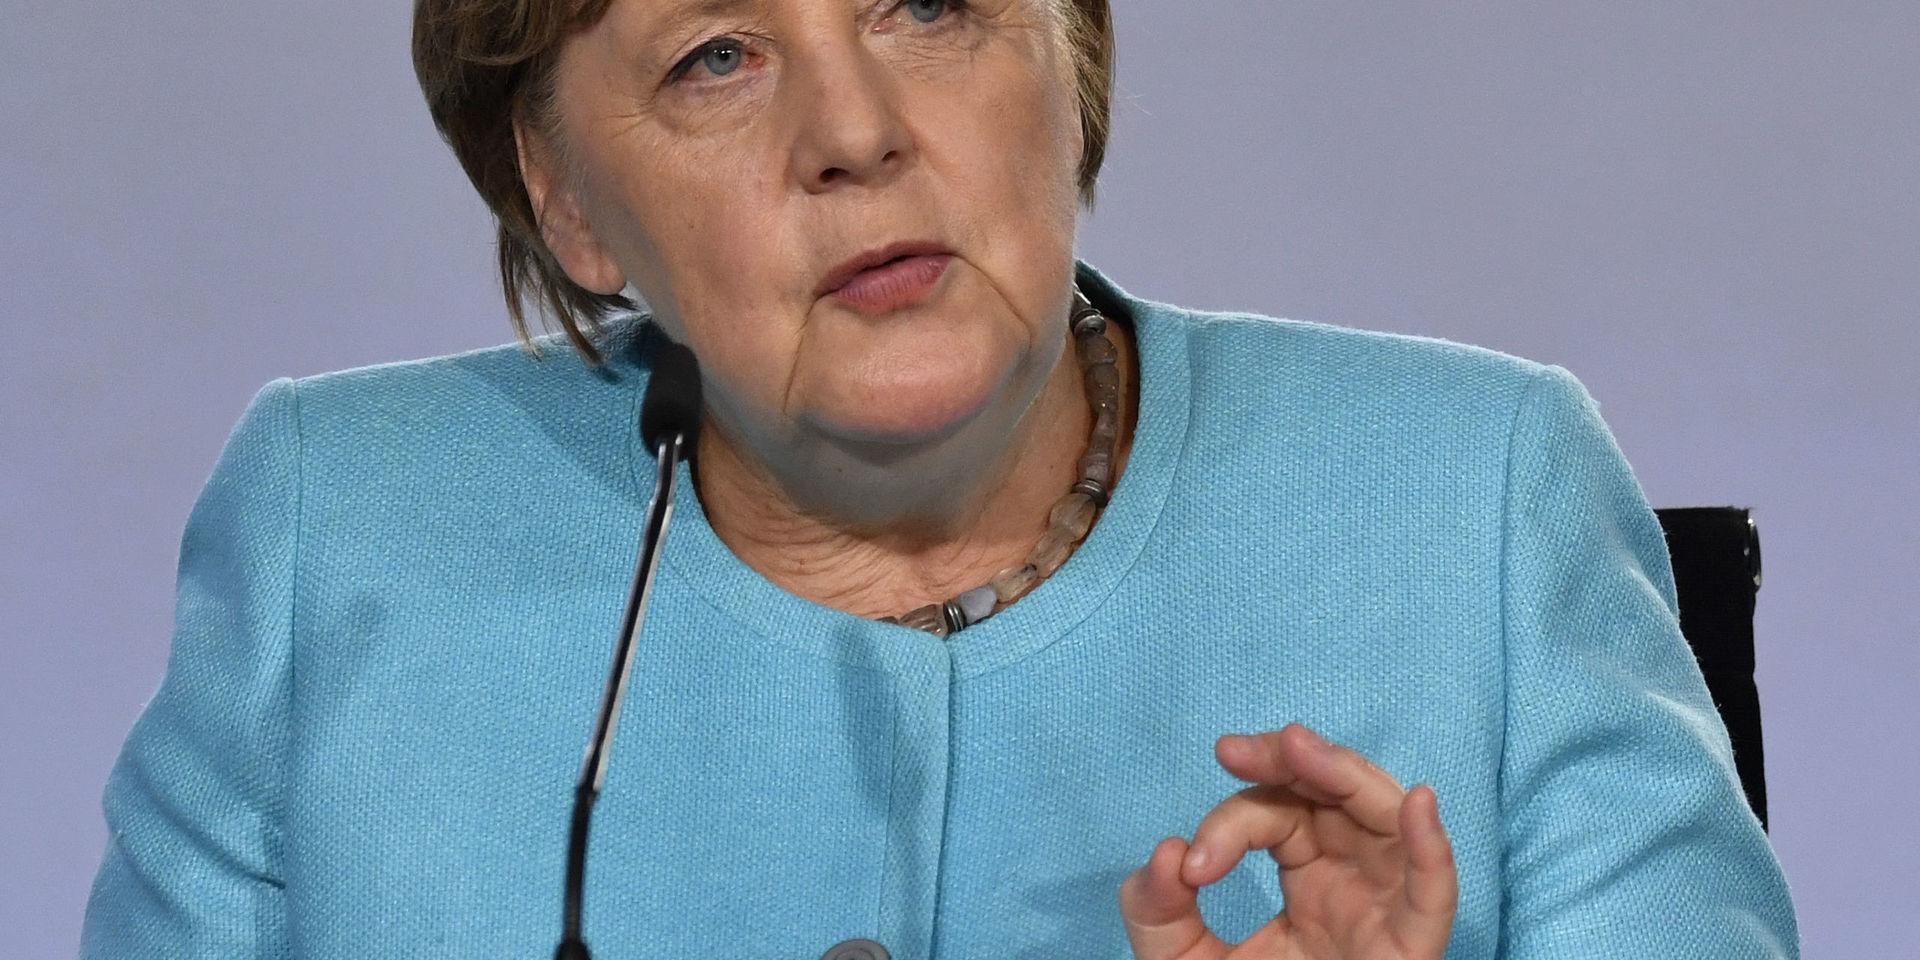 Tysklands förbundskansler Angela Merkel tillkännagav vid en presskonferens på onsdagen att regeringen kommit överens om ett stimulanspaket på 130 miljarder euro (cirka 1 350 miljarder kronor).